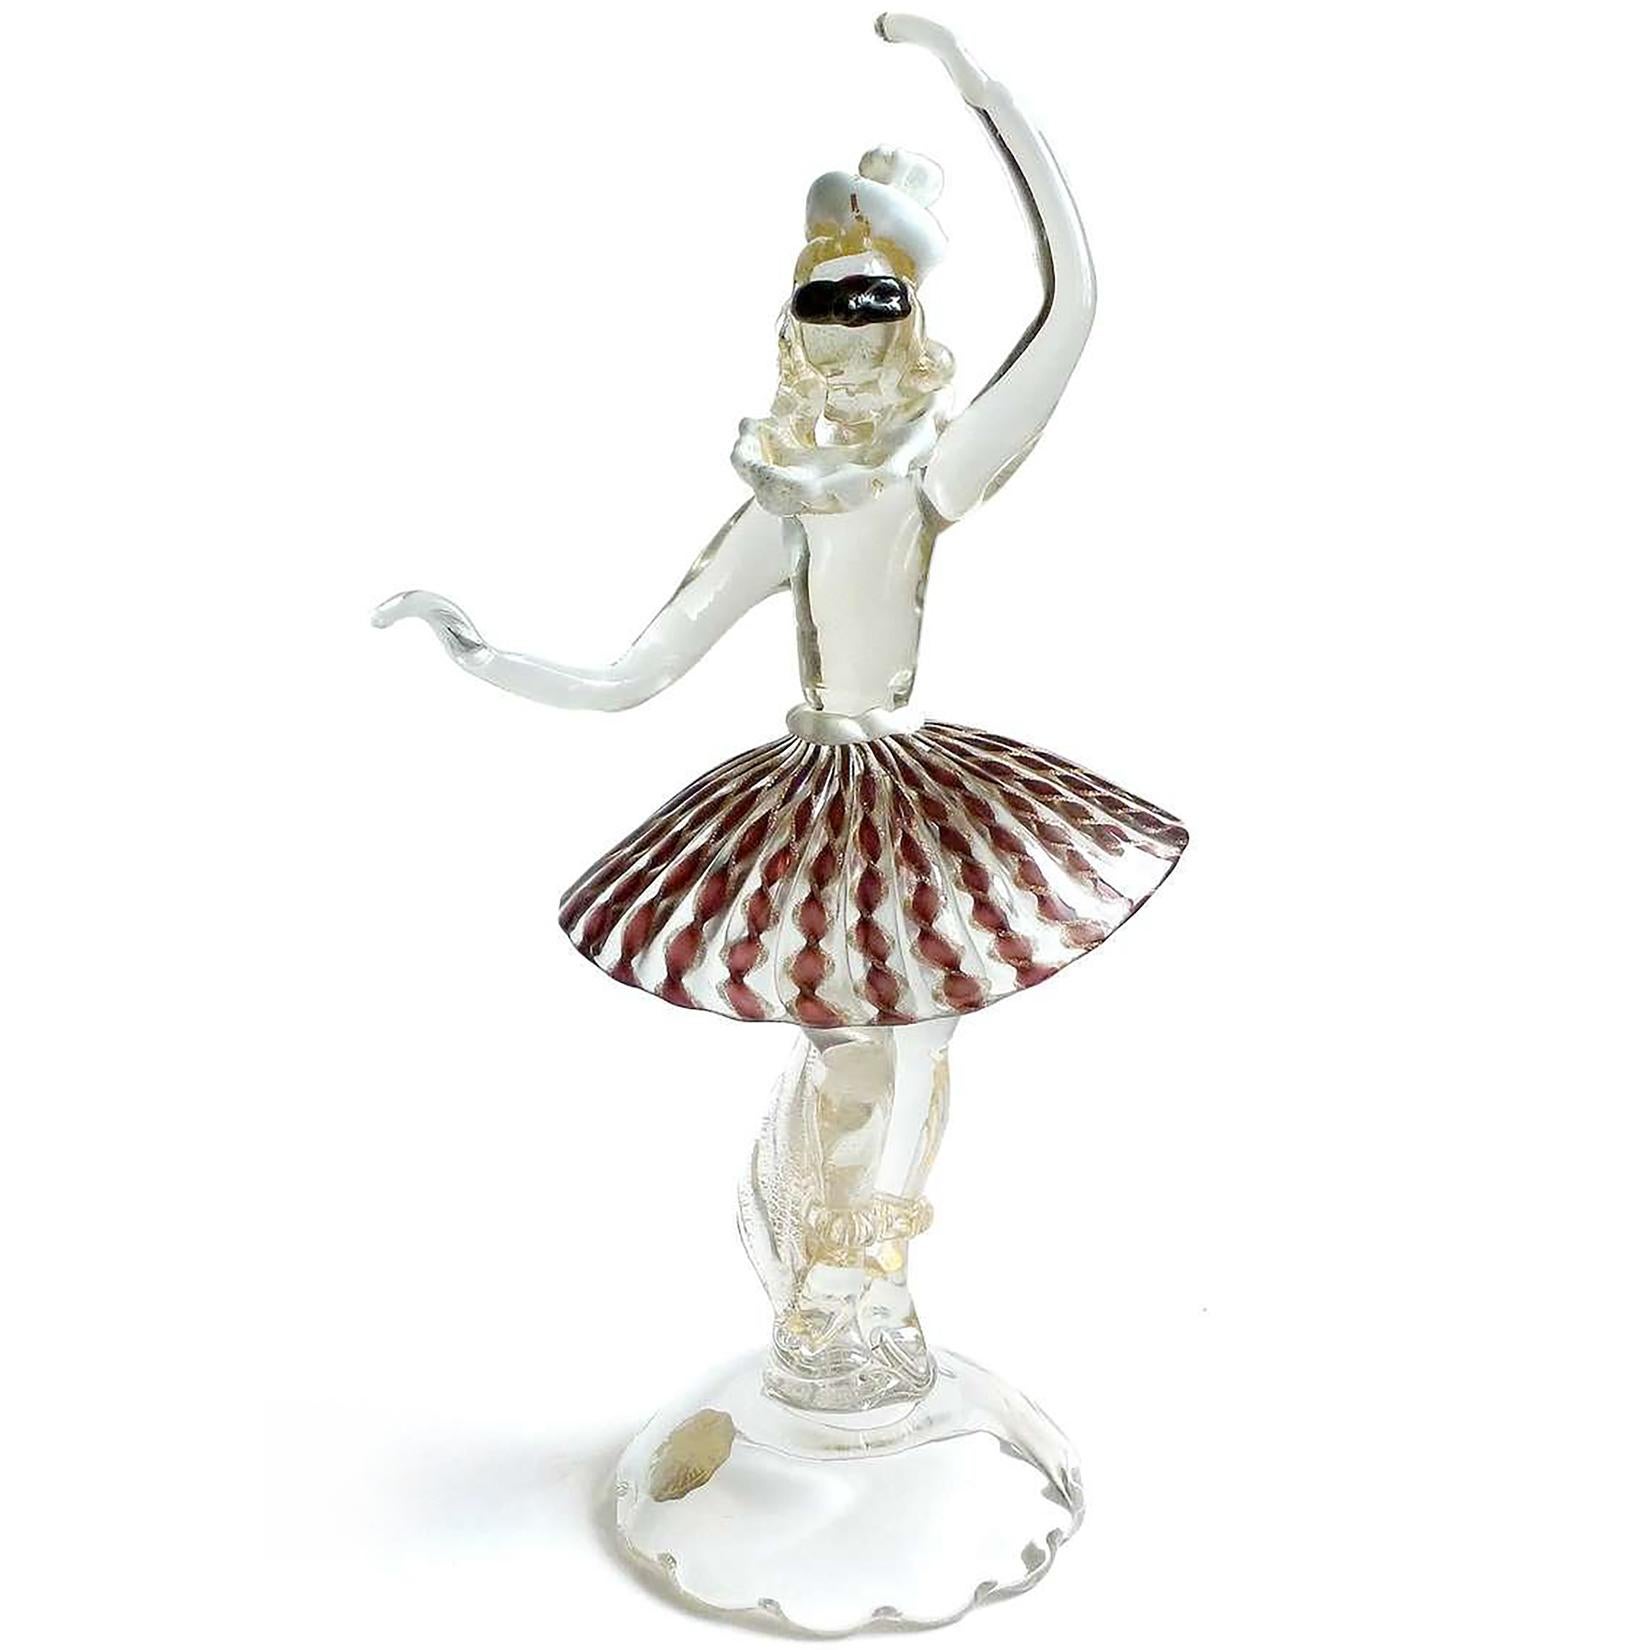 Schöne und einzigartige, Vintage Murano mundgeblasenen italienischen Kunstglas tanzende Ballerina Skulptur mit Harlekin Maske, Hut und Zanfirico Bänder Rock. Dokumentiert auf die Firma Salviati, gekennzeichnet mit einem Original 